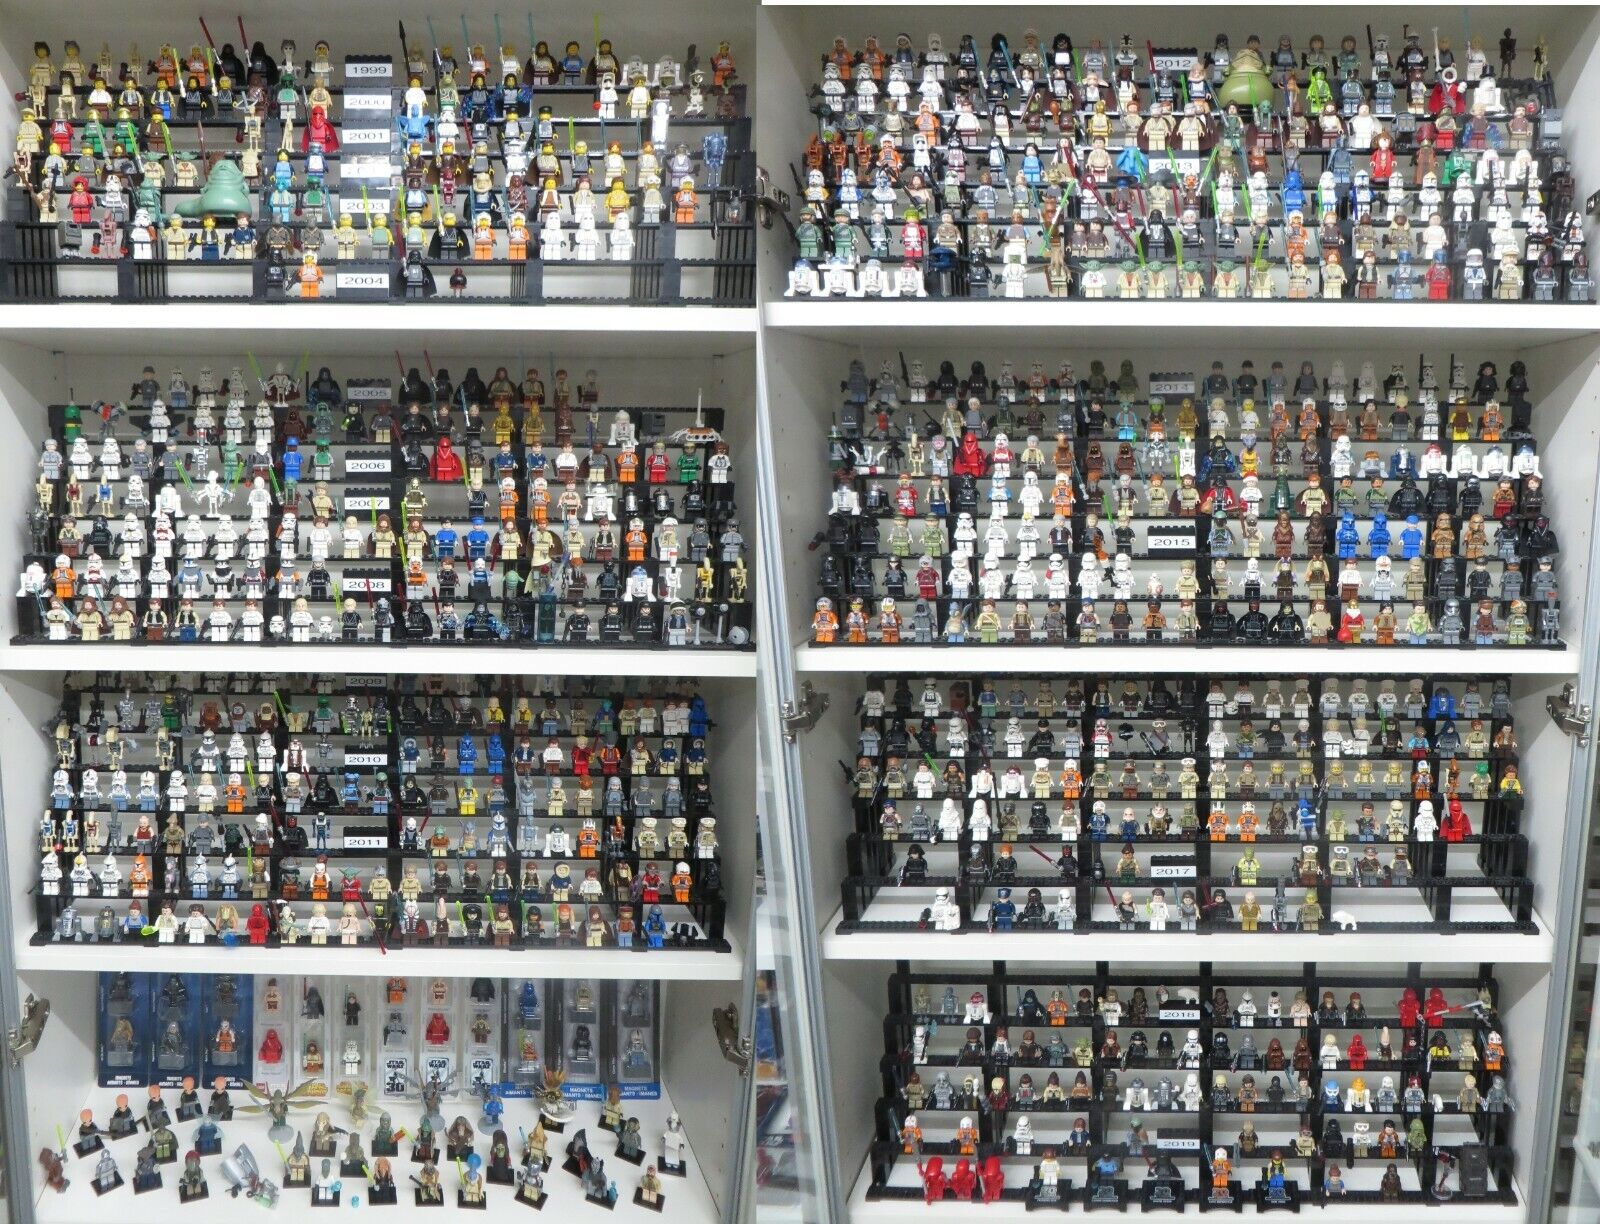 LEGO Star Wars Figuras Colección más de 1200 figuras diferentes para elegir NUEVO